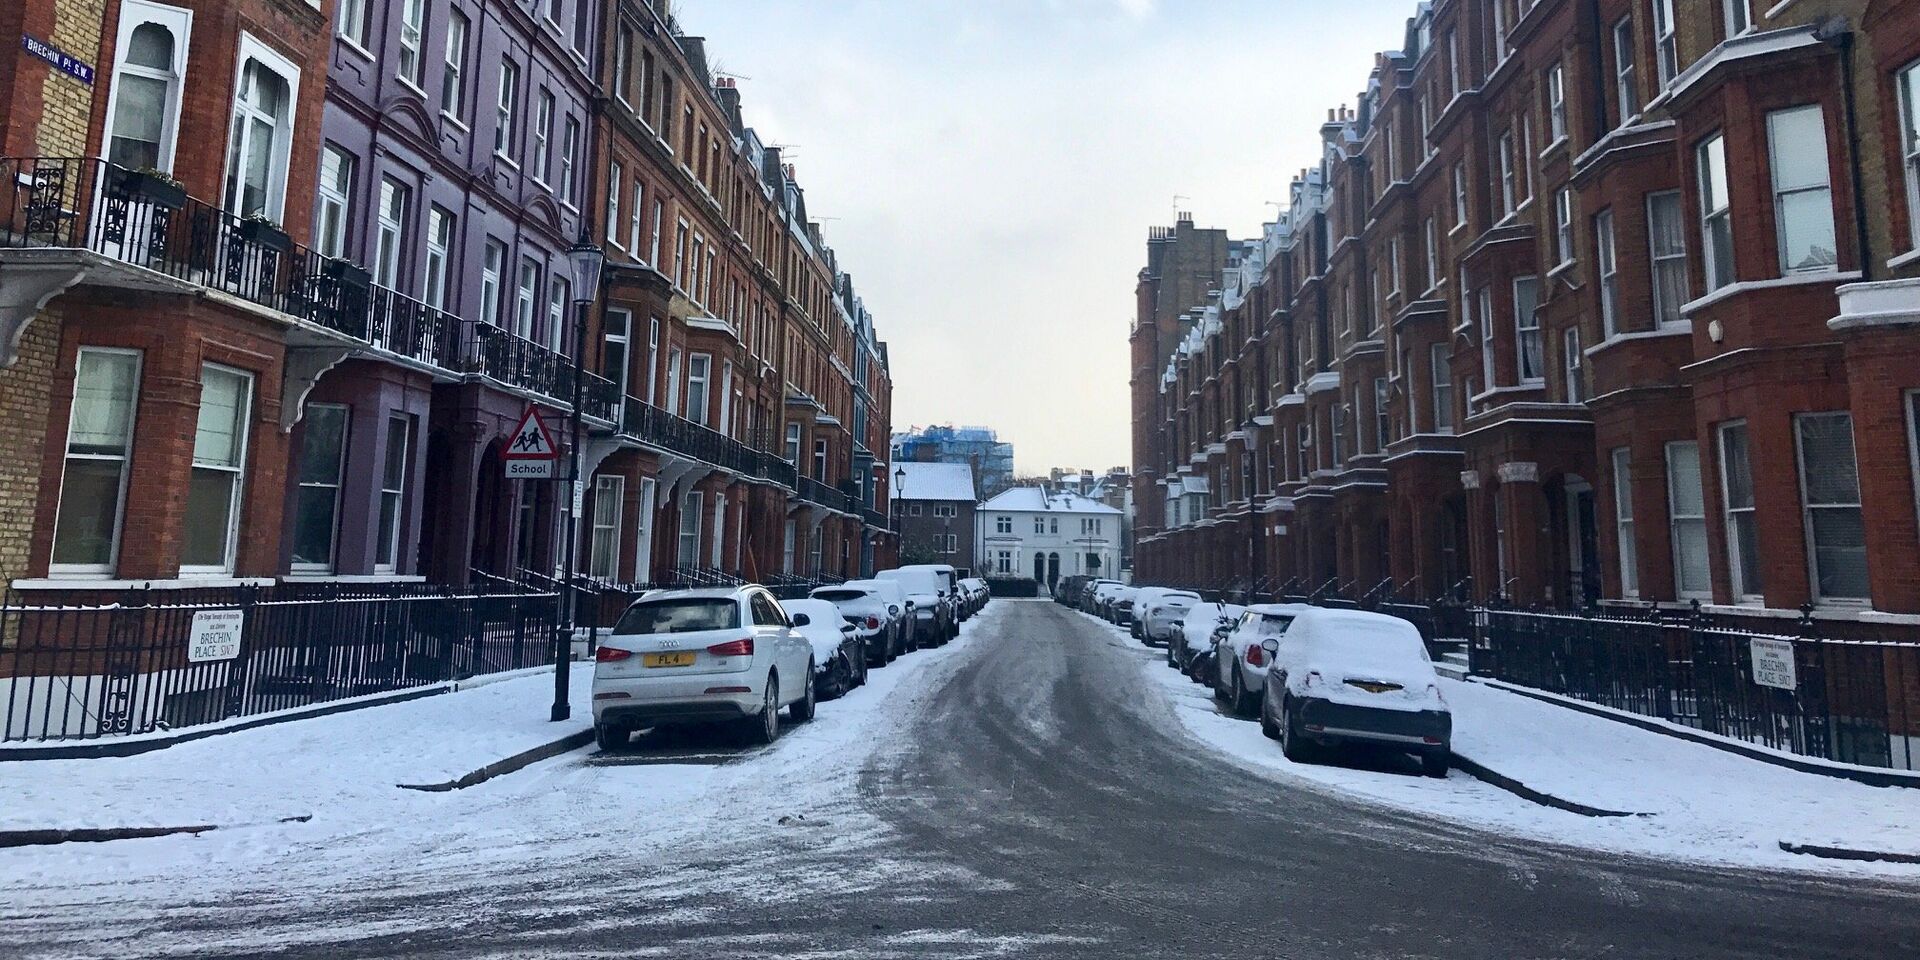 Снег, выпавший на улицах Лондона. 28 февраля 2018 - ИноСМИ, 1920, 03.04.2022